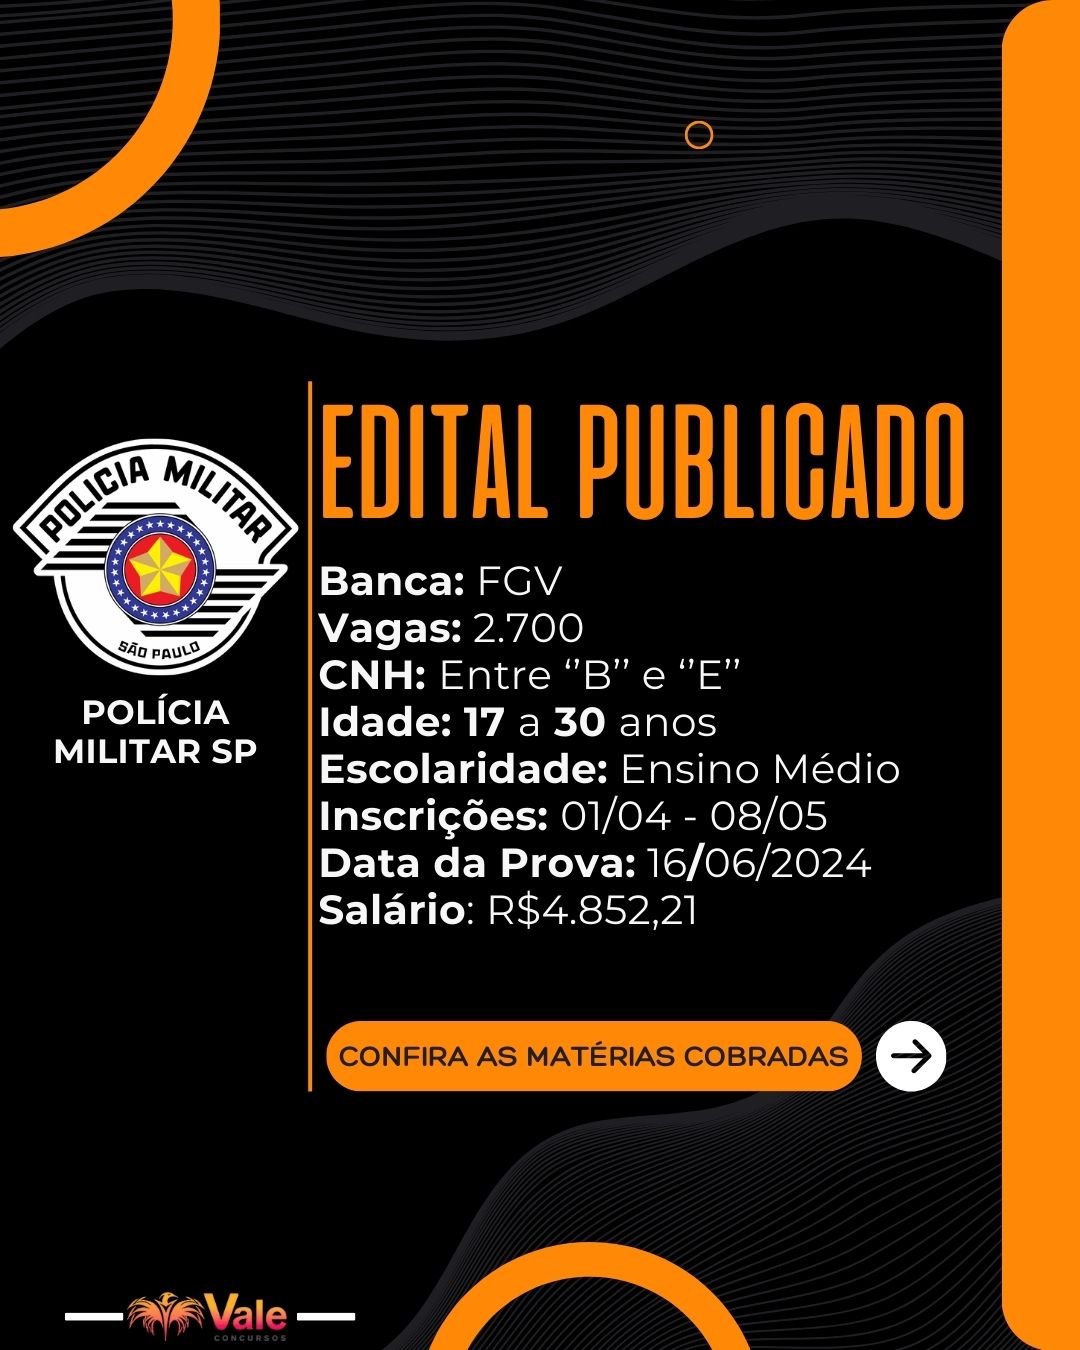 EDITAL PUBLICADO: PMSP (POLÍCIA MILITAR DE SÃO PAULO)